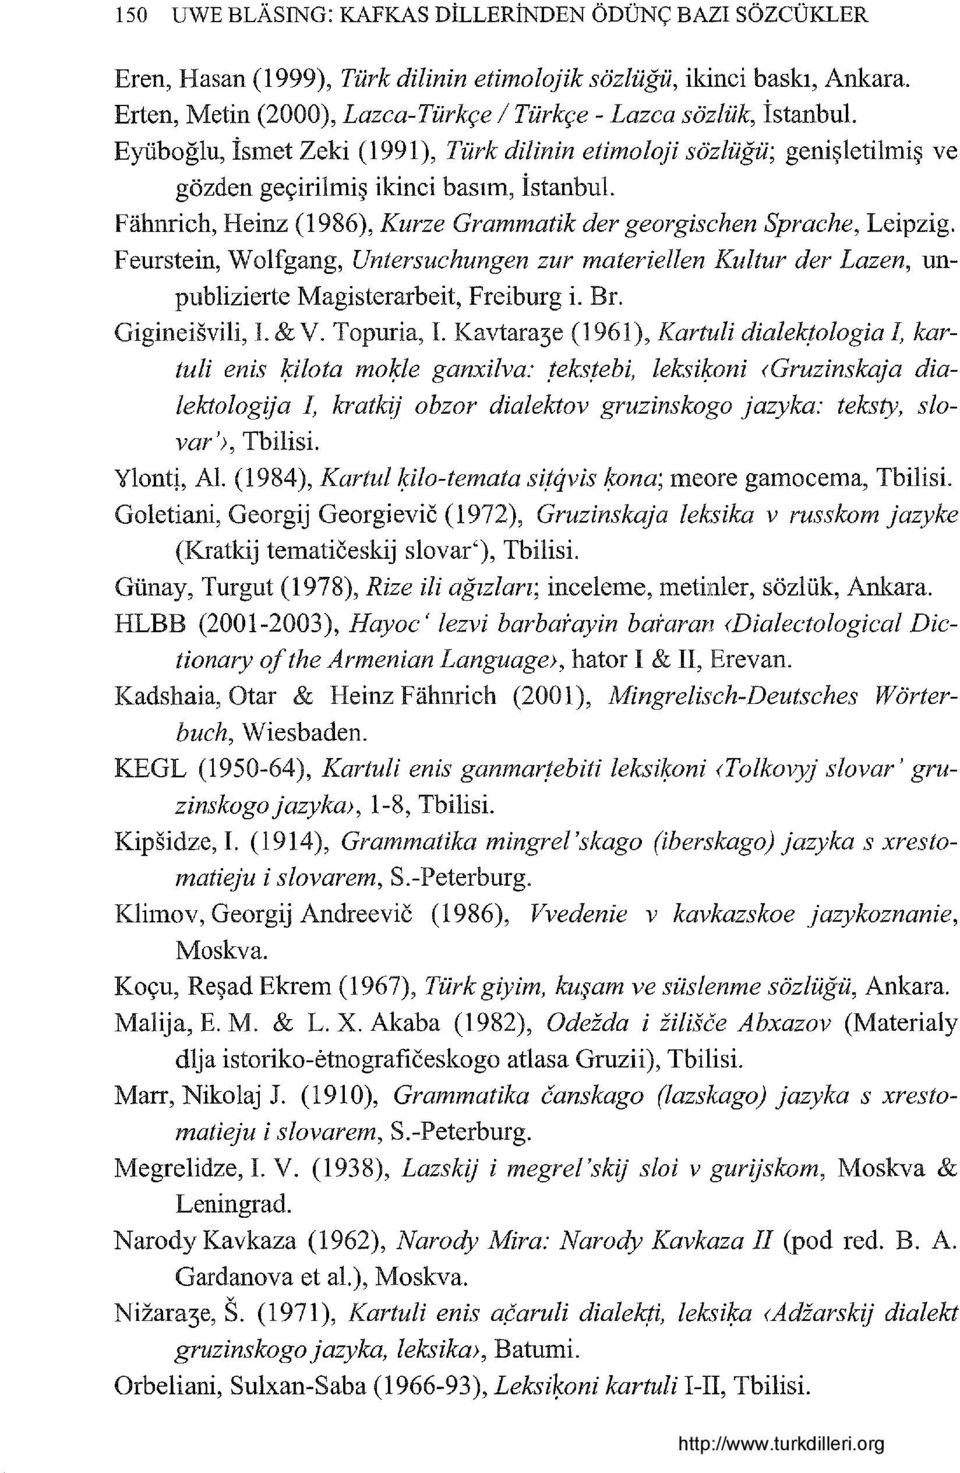 Feurstein, Wolfgang, Untersuchungen zur materiellen Kultur der Lazen, unpublizierte Magisterarbeit, Freiburg i. Br. Gigineisvili, i. & V. Topuria, ı. Kavtara3e (1961), Kartuli dialek!